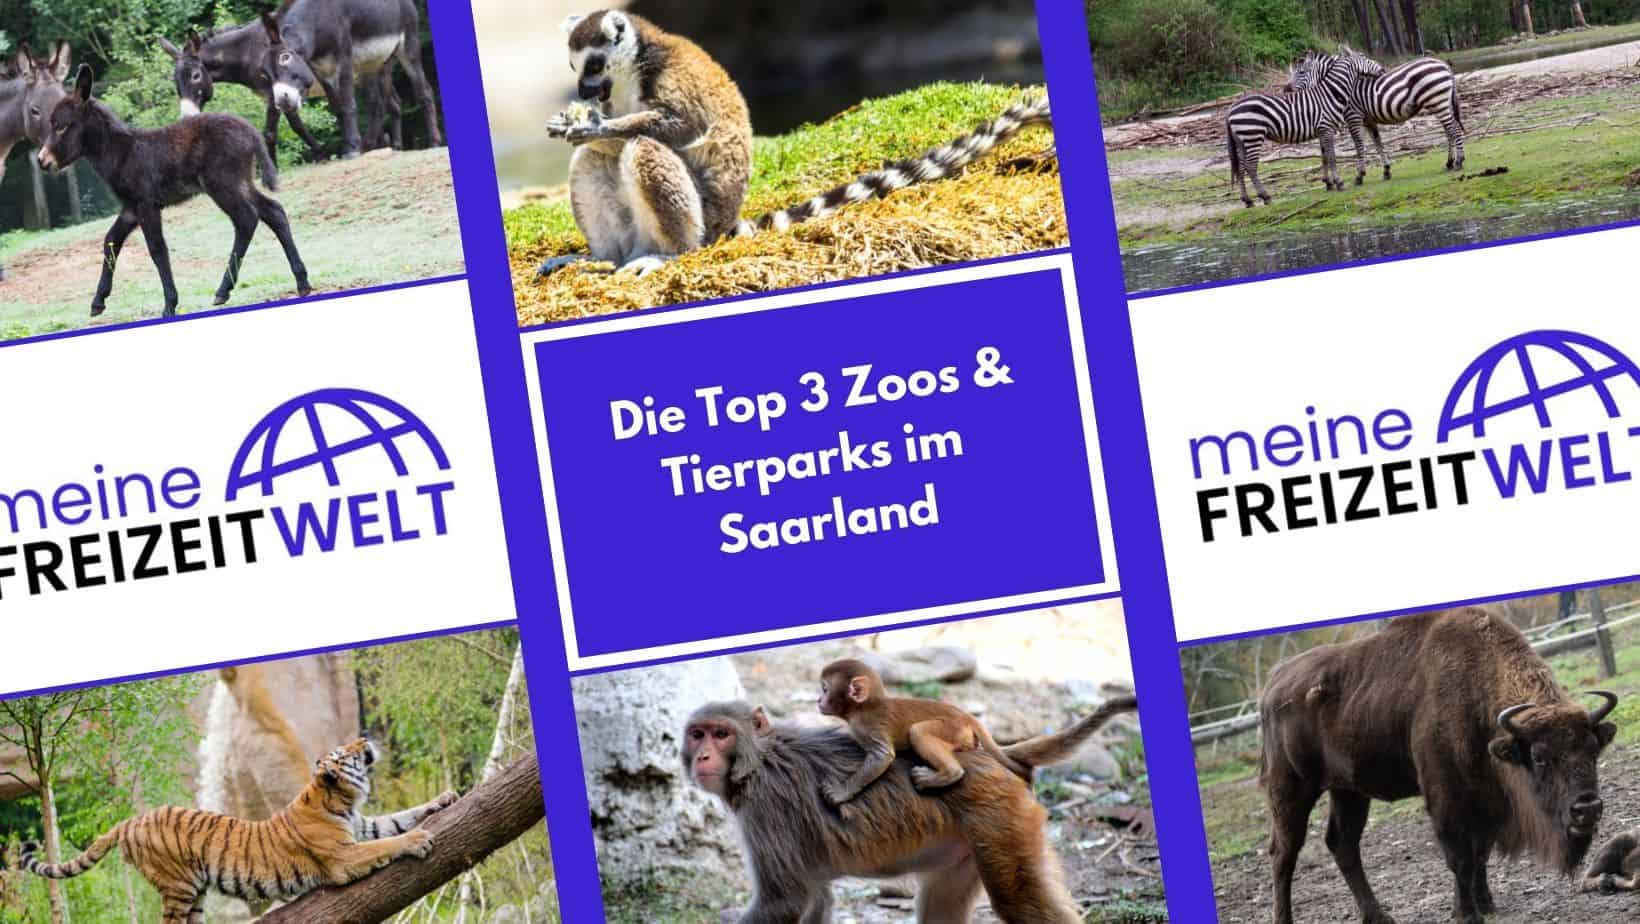 Die Top 3 Zoos & Tierparks im Saarland